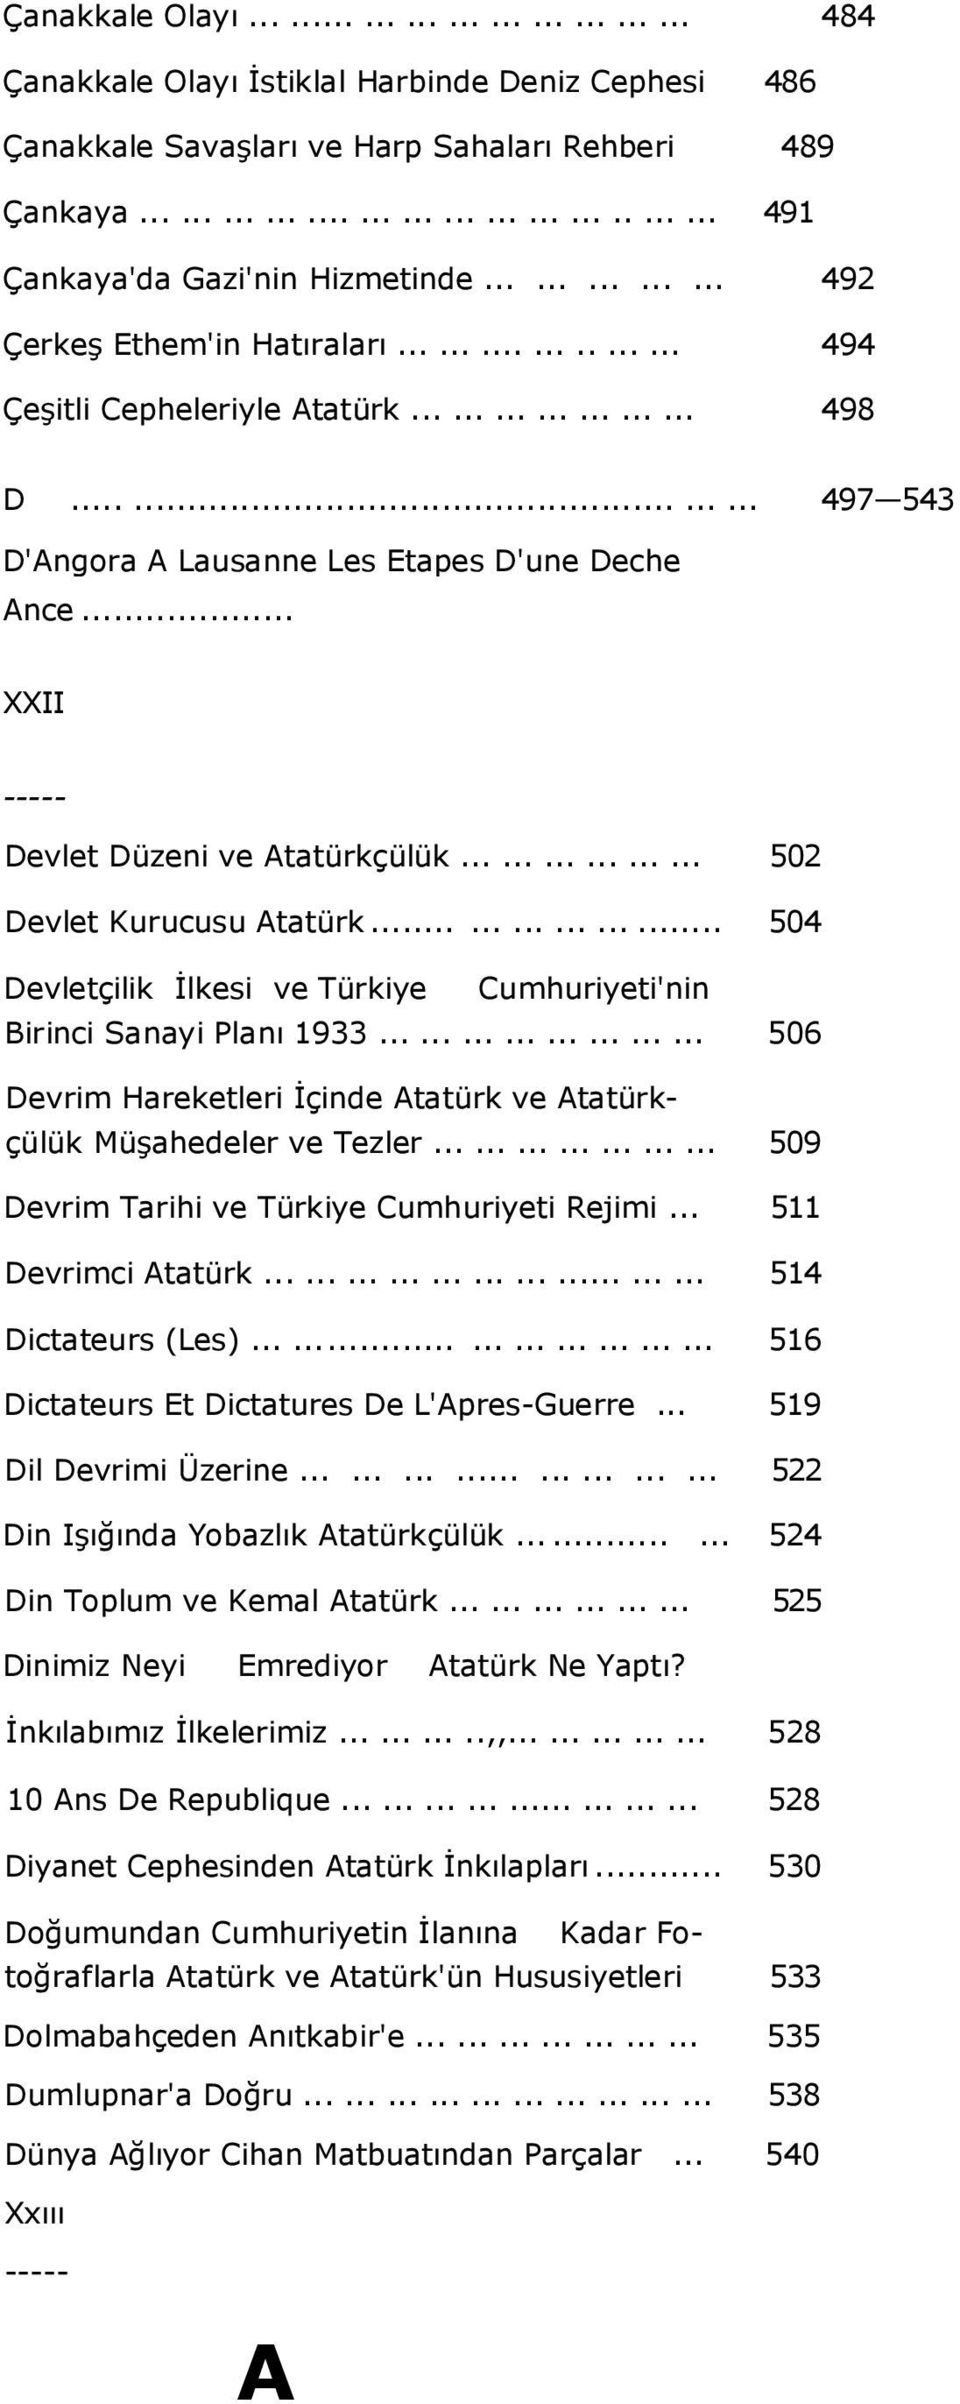 .. XXII Devlet Düzeni ve Atatürkçülük.................. 502 Devlet Kurucusu Atatürk.................. 504 Devletçilik İlkesi ve Türkiye Cumhuriyeti'nin Birinci Sanayi Planı 1933.